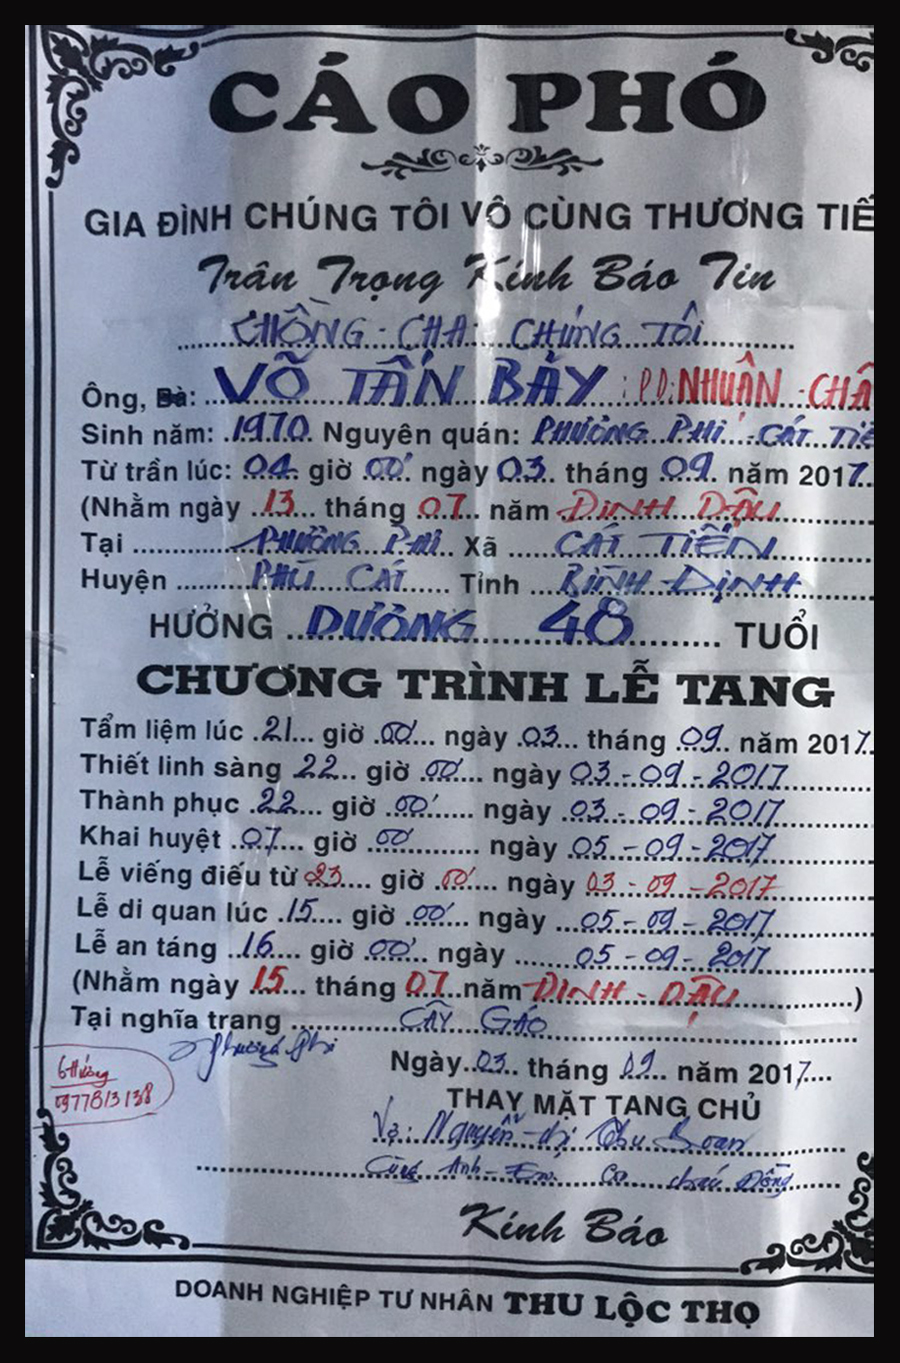 Cao Pho_Tang Le_Vo Tan Bay-4